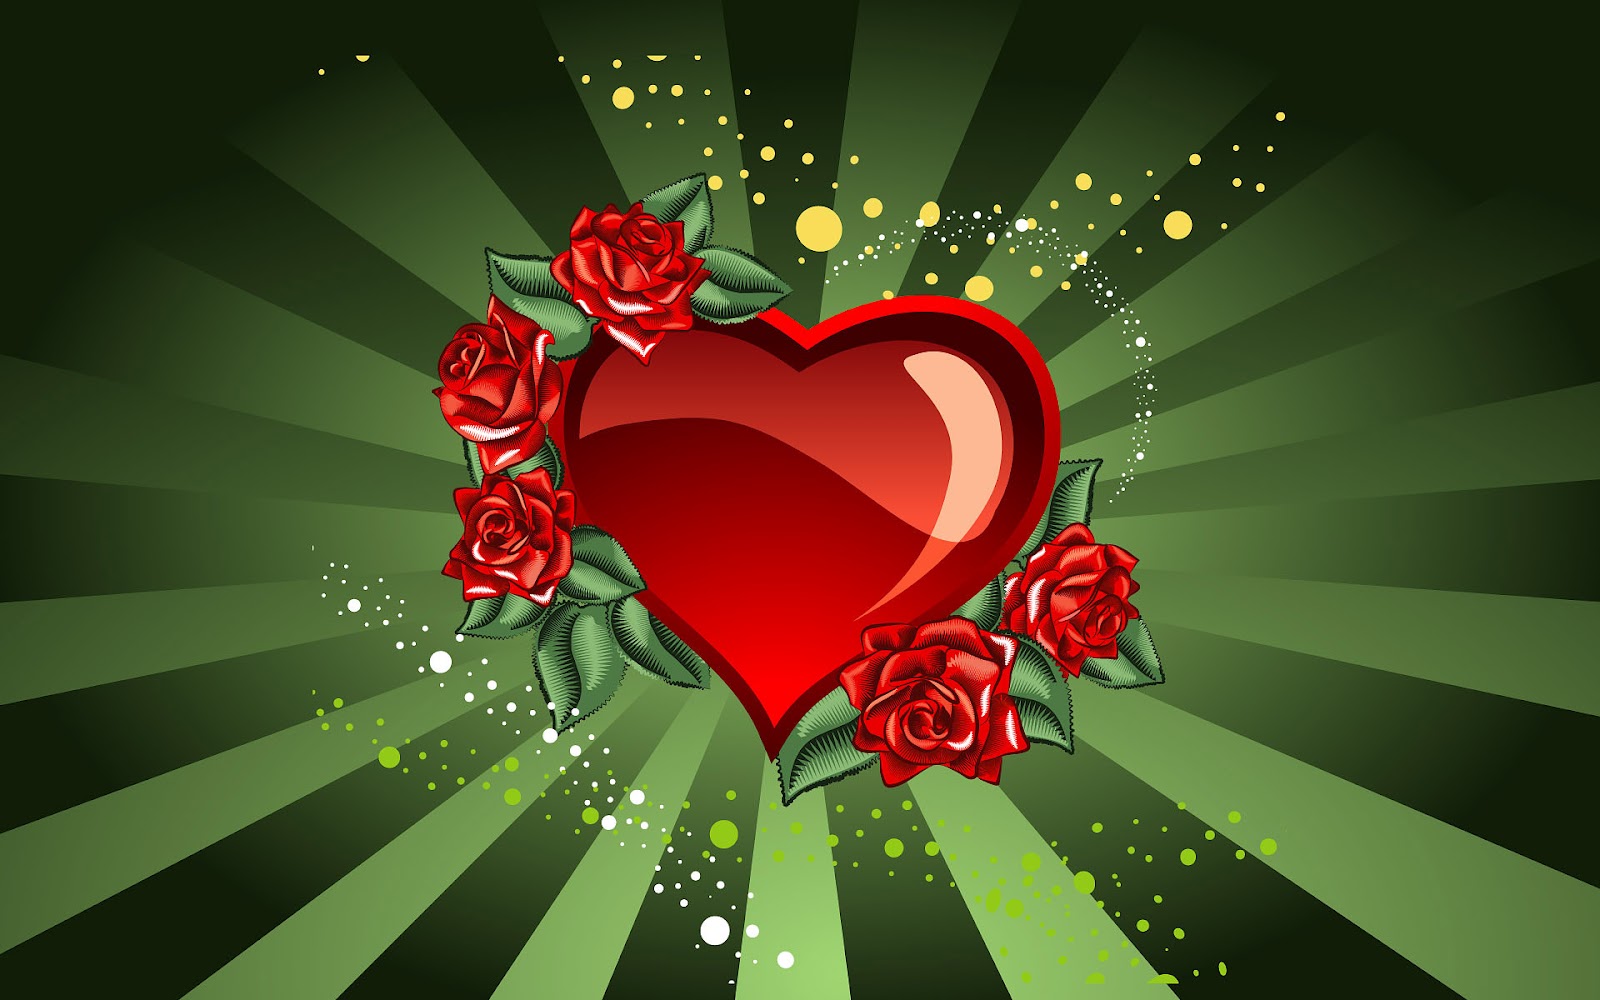 http://3.bp.blogspot.com/-w8lYOmOuzAc/UA62LVaEgDI/AAAAAAAADZU/eToLEnh8Cr4/s1600/hd-achtergrond-groene-liefde-wallpaper-met-rood-hart-hd-wallpaper.jpg